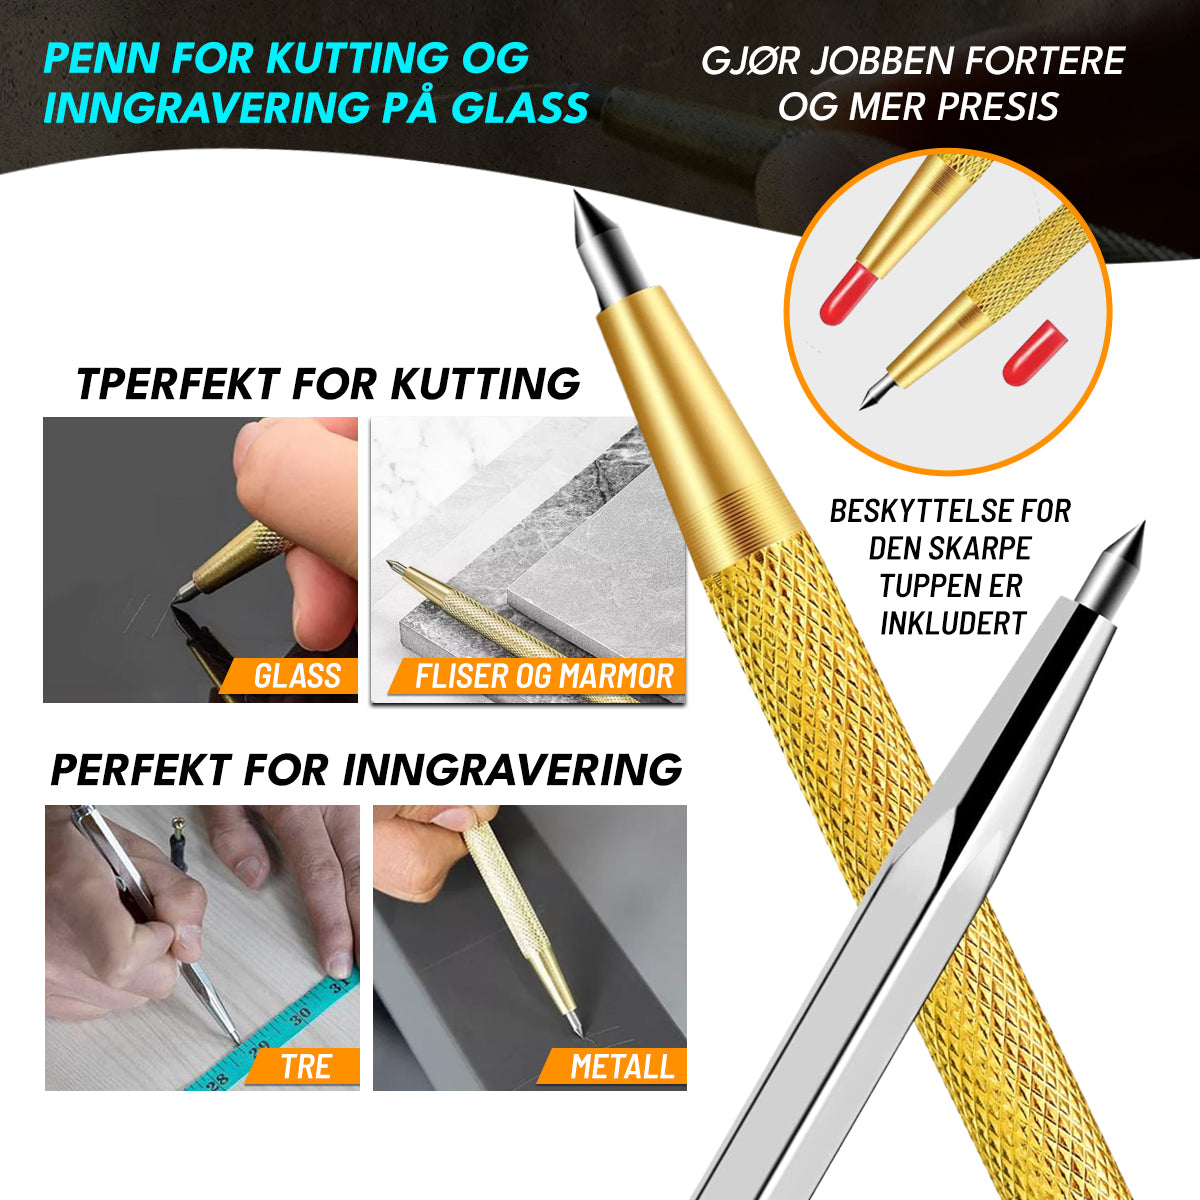 GlasScriber™ - Penn for Kutting og Inngravering på Glass